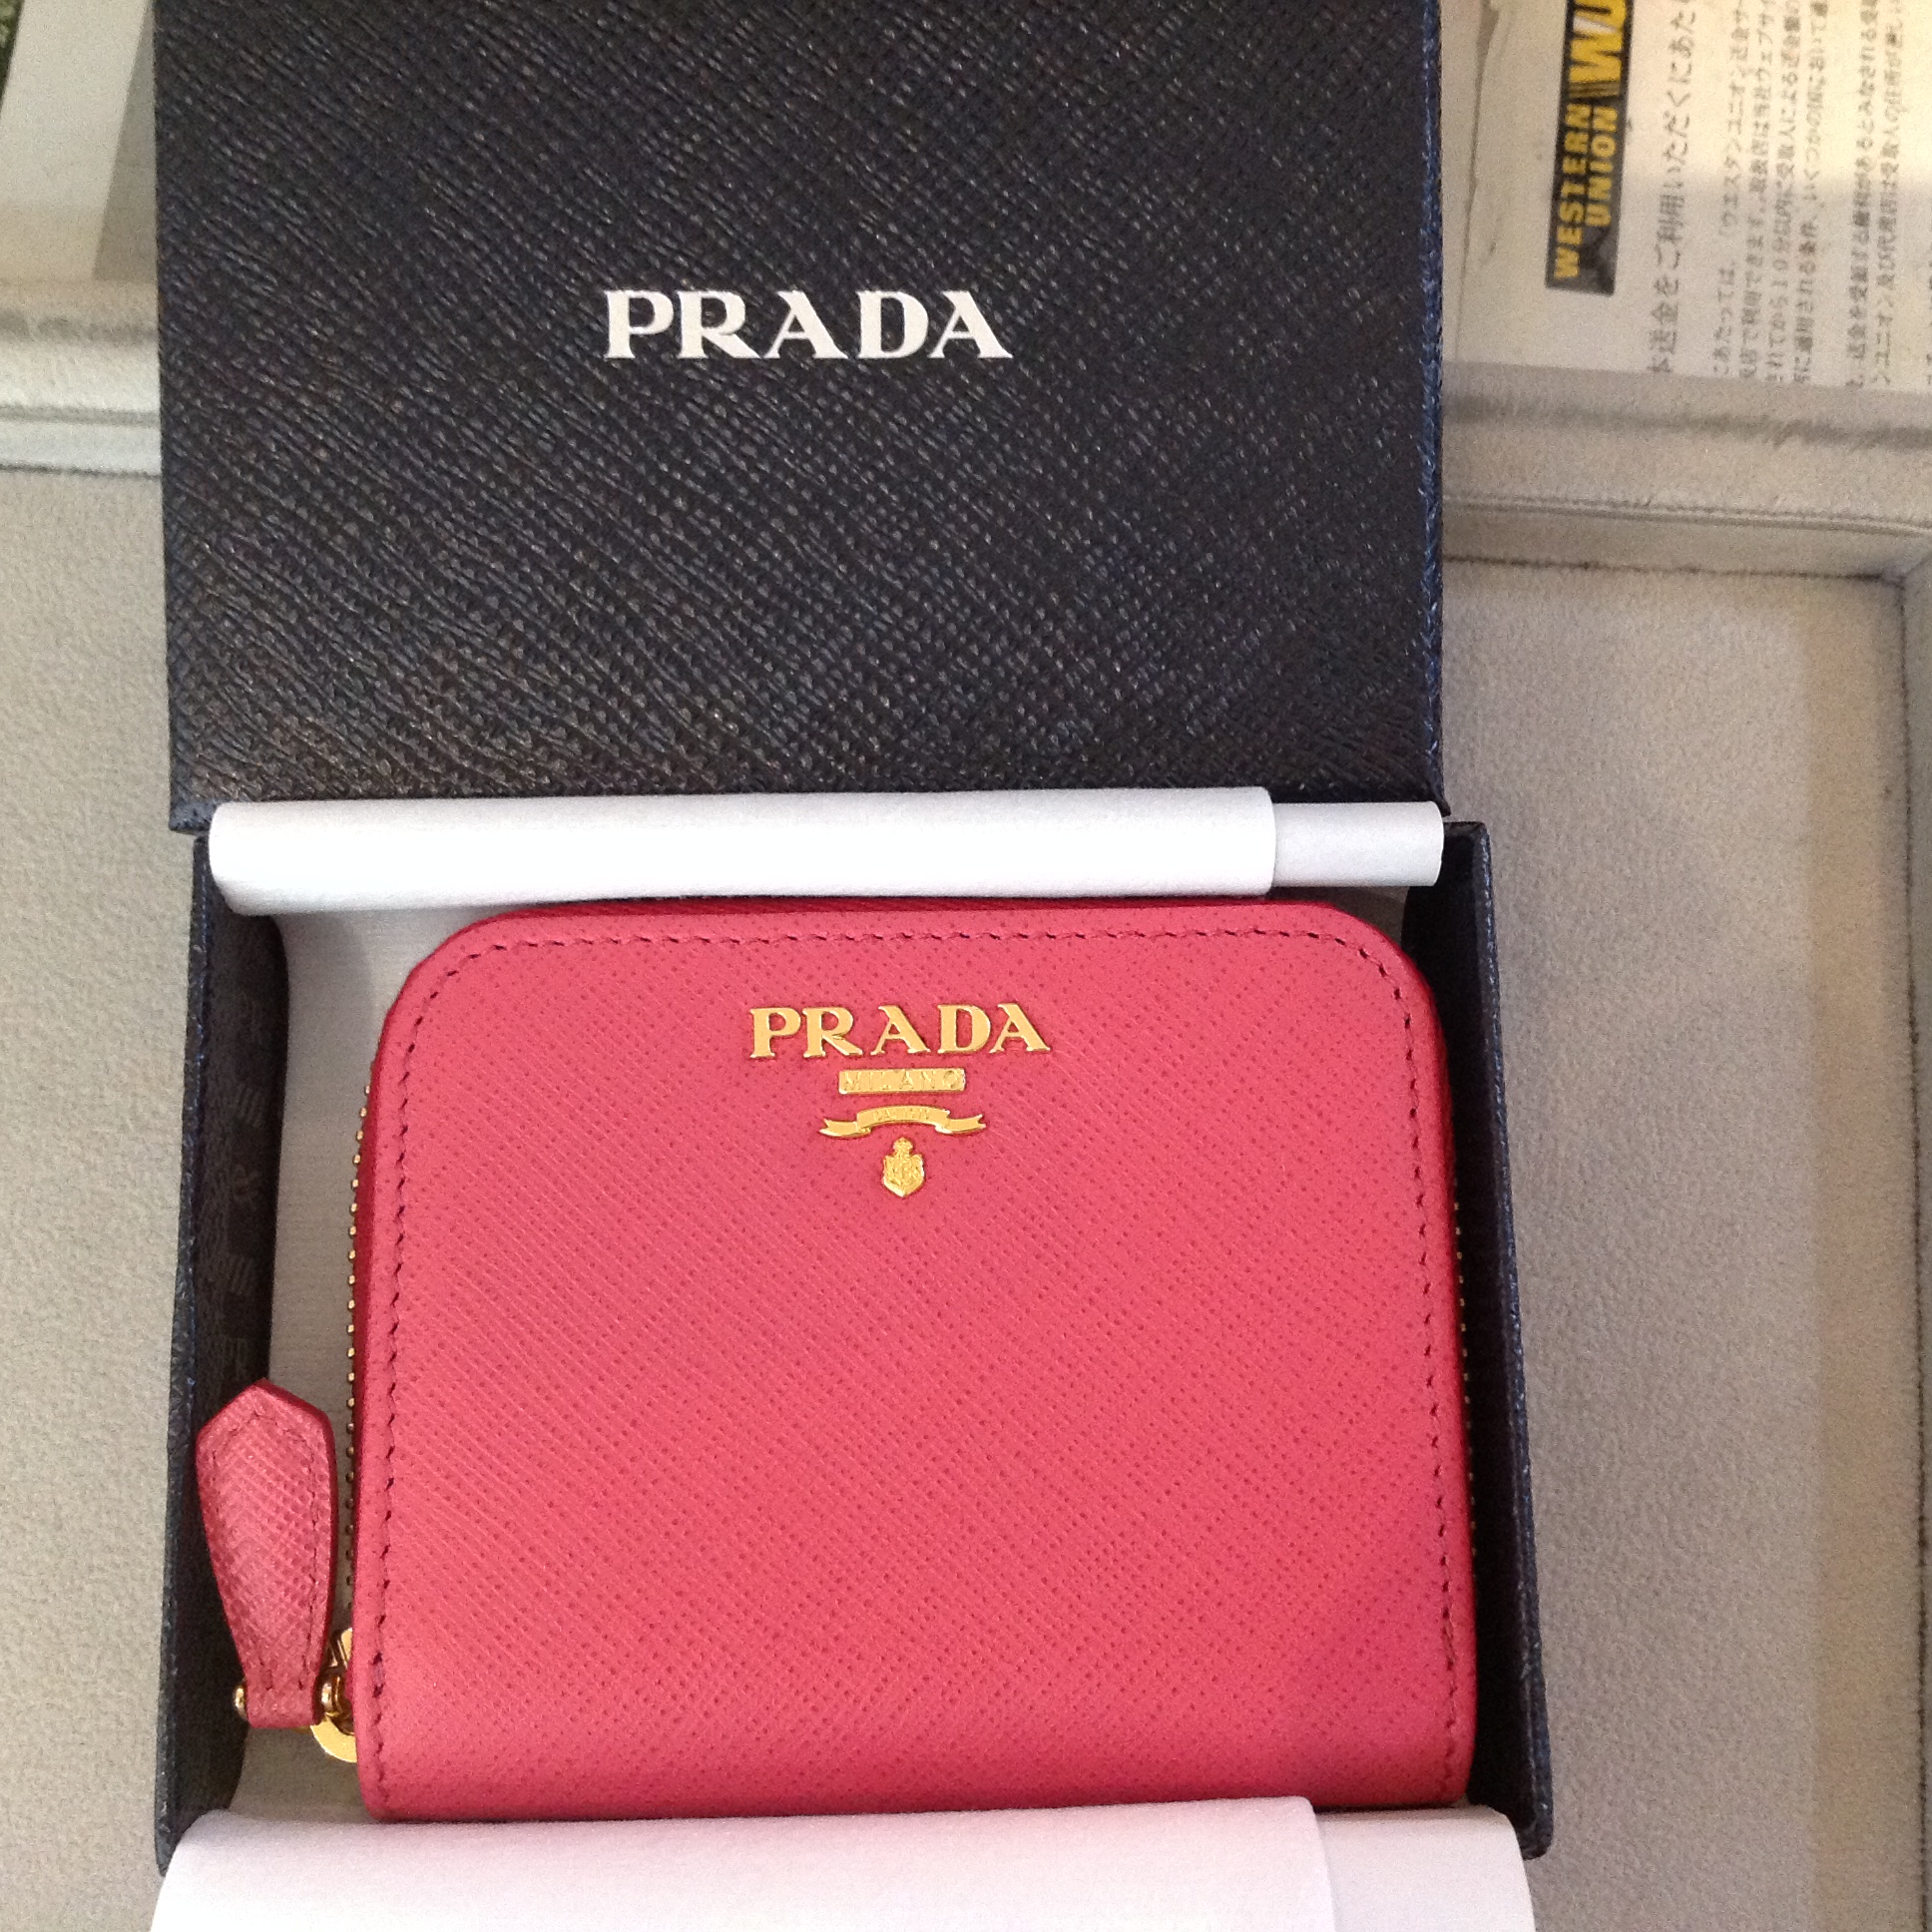 『PRADA(プラダ)』のカード・コインケースを買い取りました。 | ブランド・買取・販売｜質丸滝 川崎 横浜